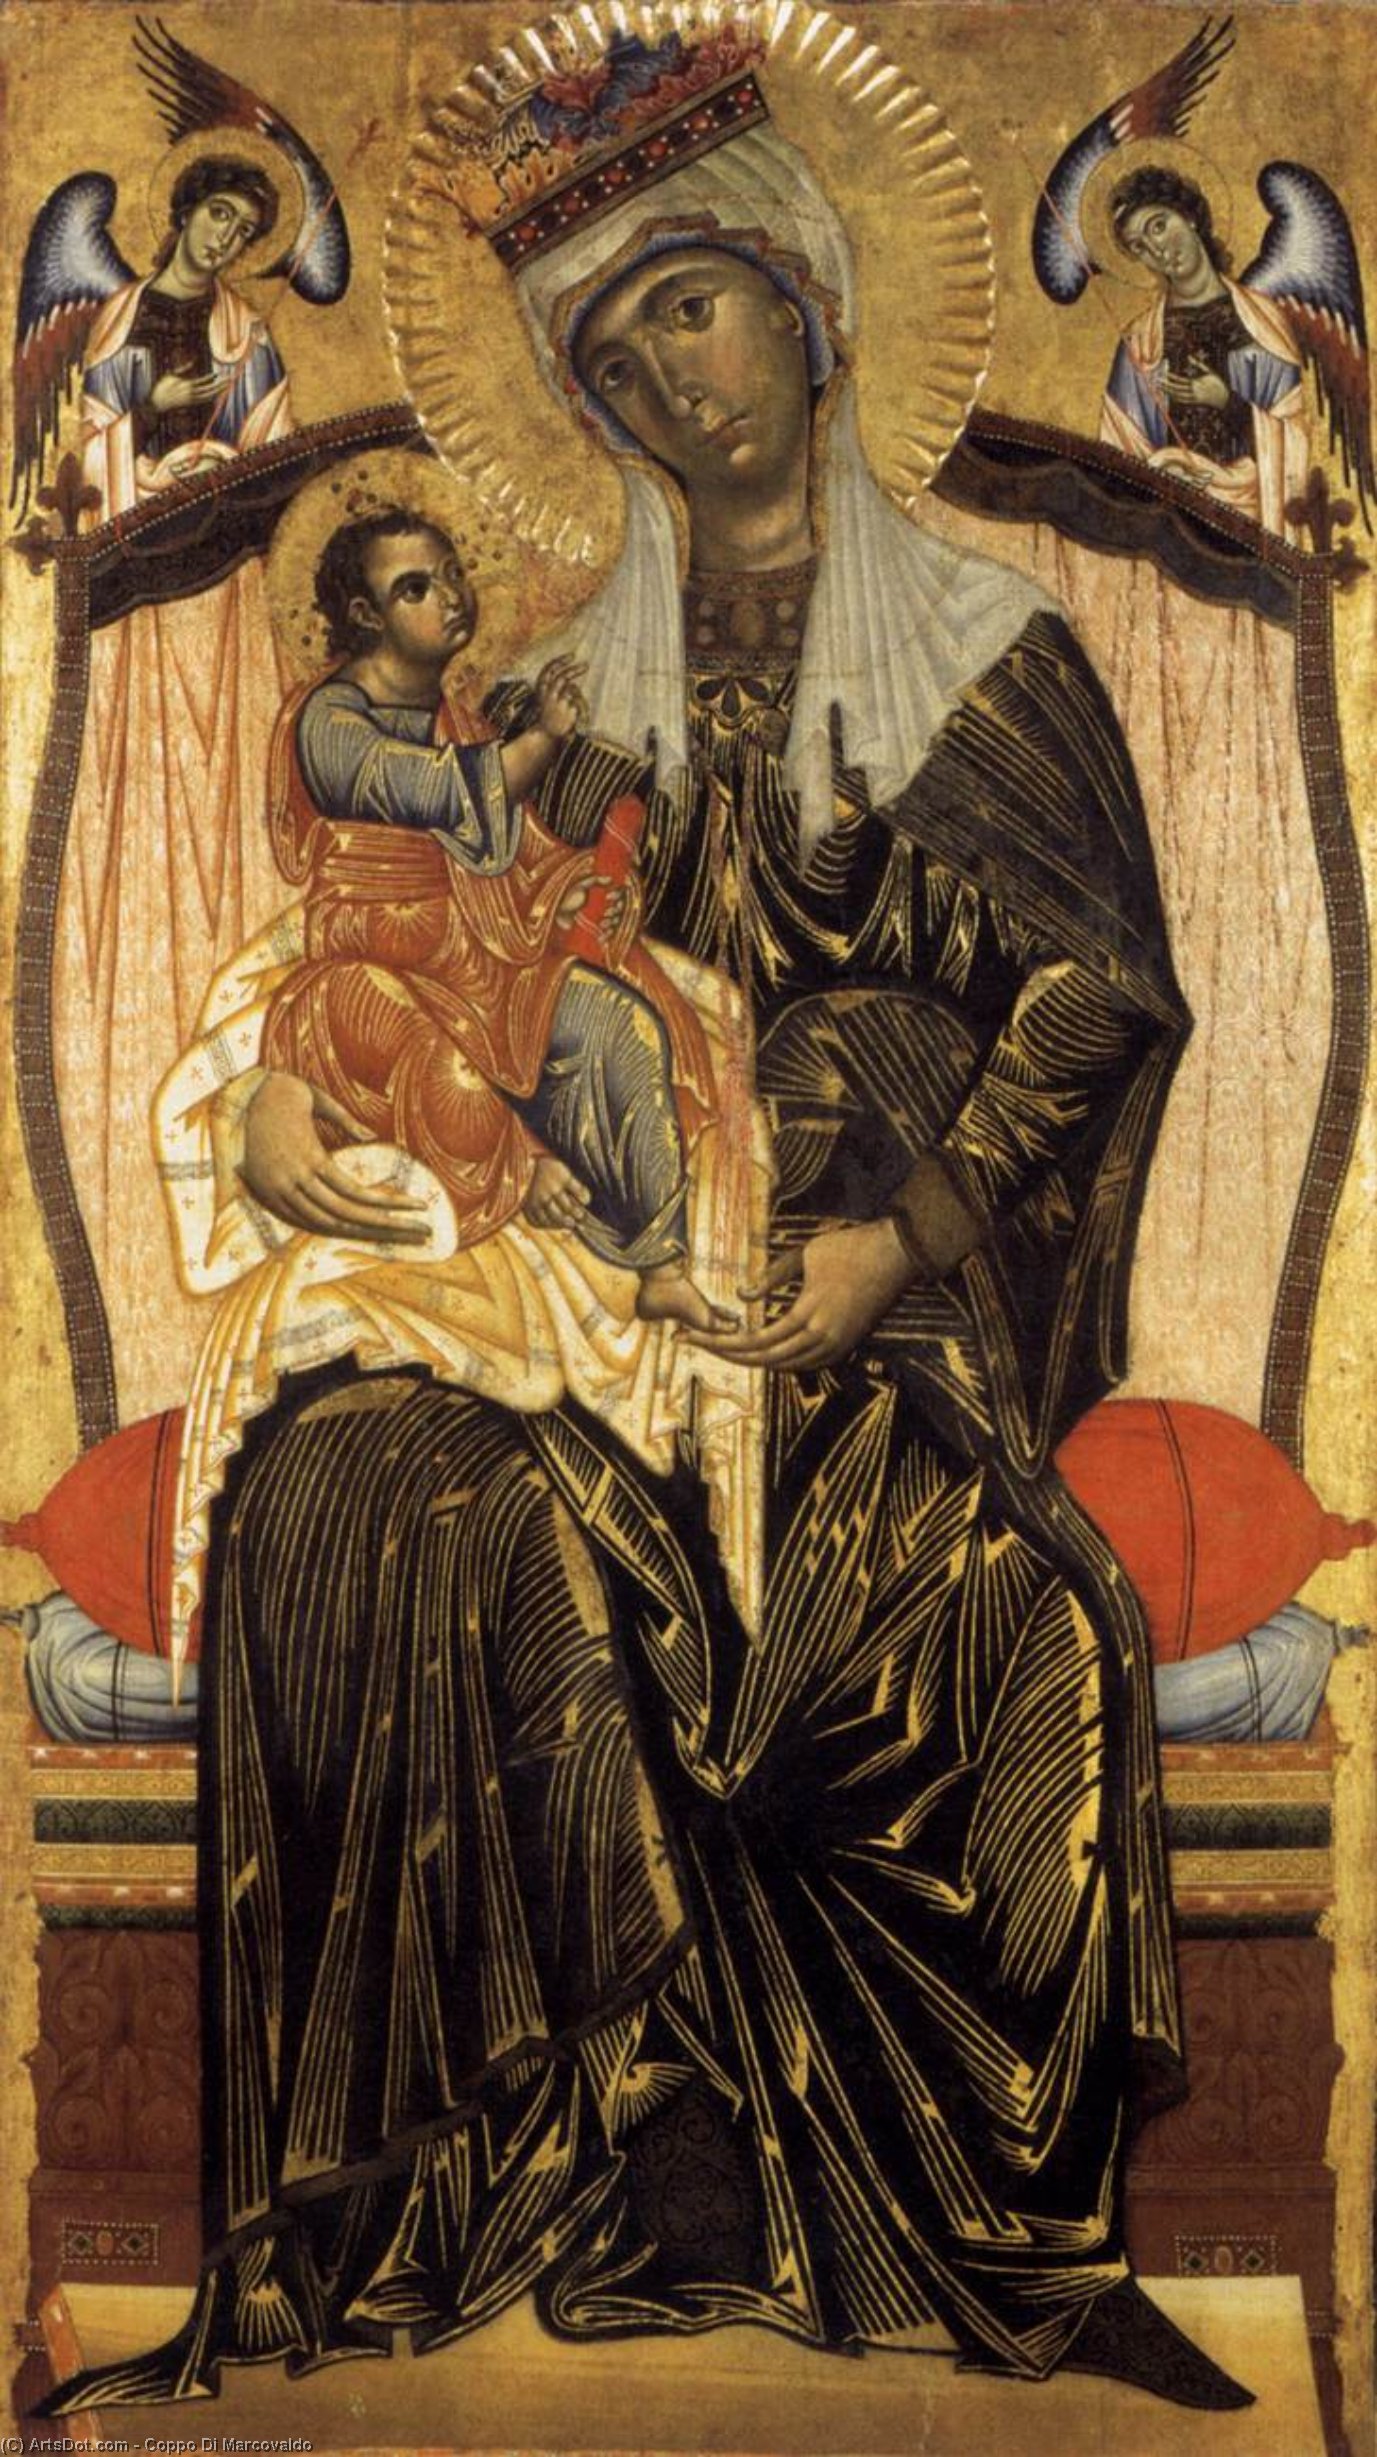 WikiOO.org - Encyclopedia of Fine Arts - Maleri, Artwork Coppo Di Marcovaldo - Madonna and Child